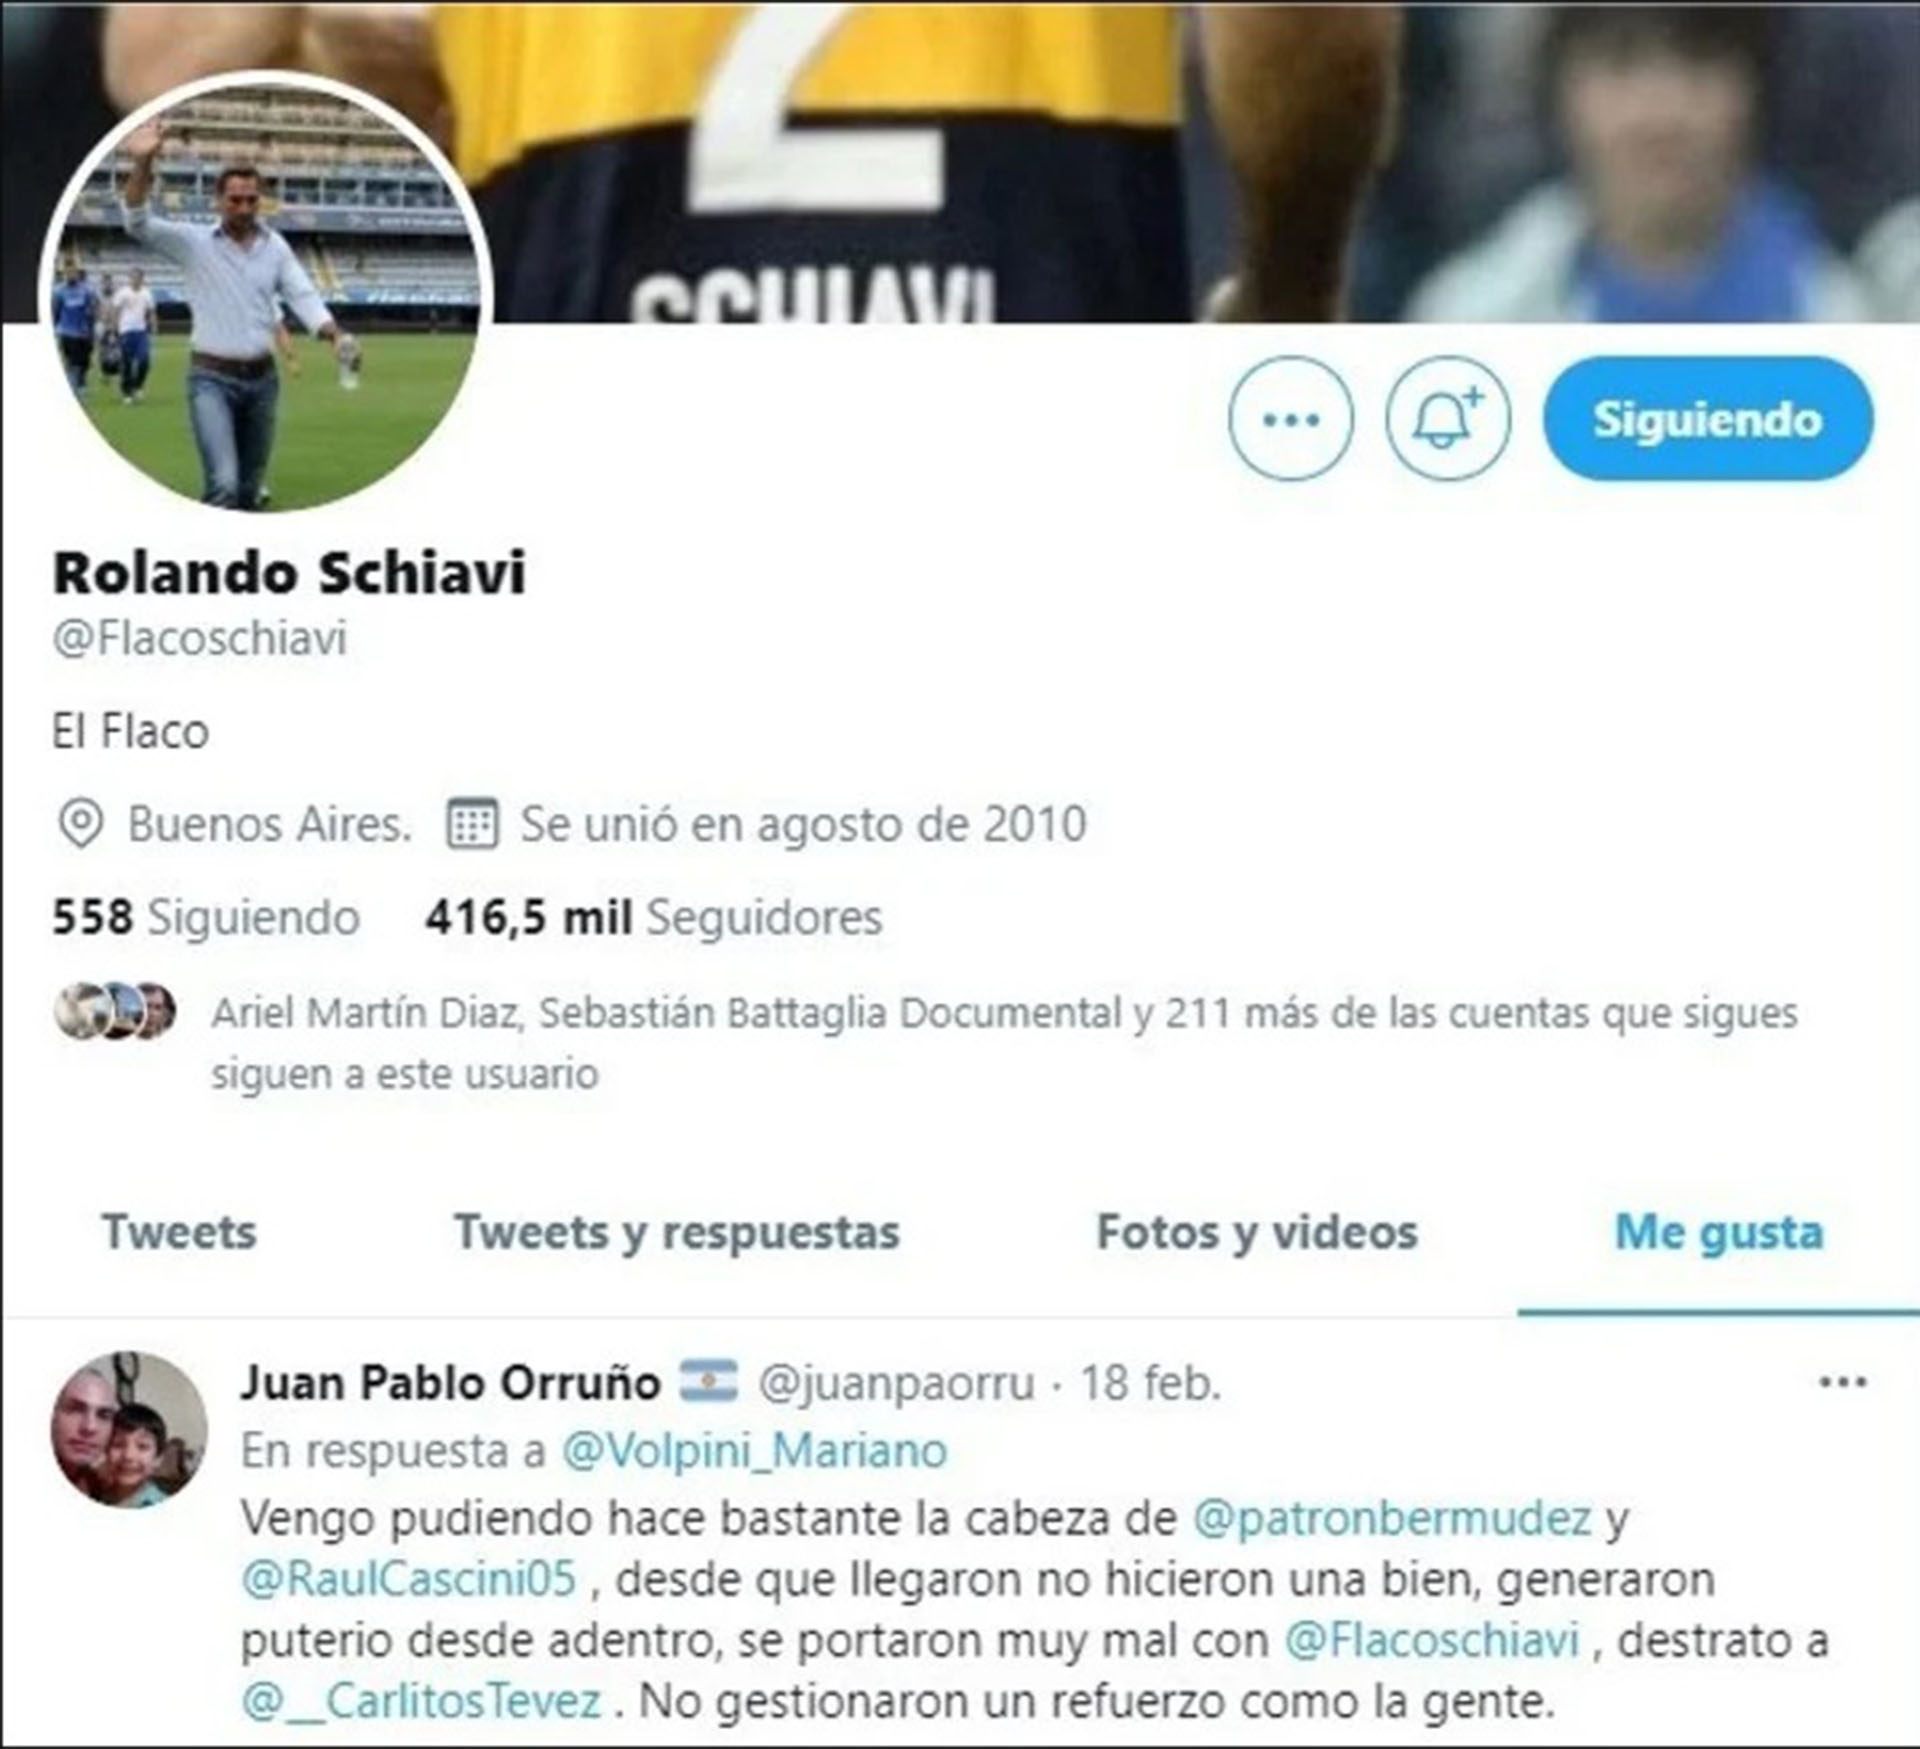 El polémico tuit contra Bermúdez y Cascini que Schiavi dio "me gusta"